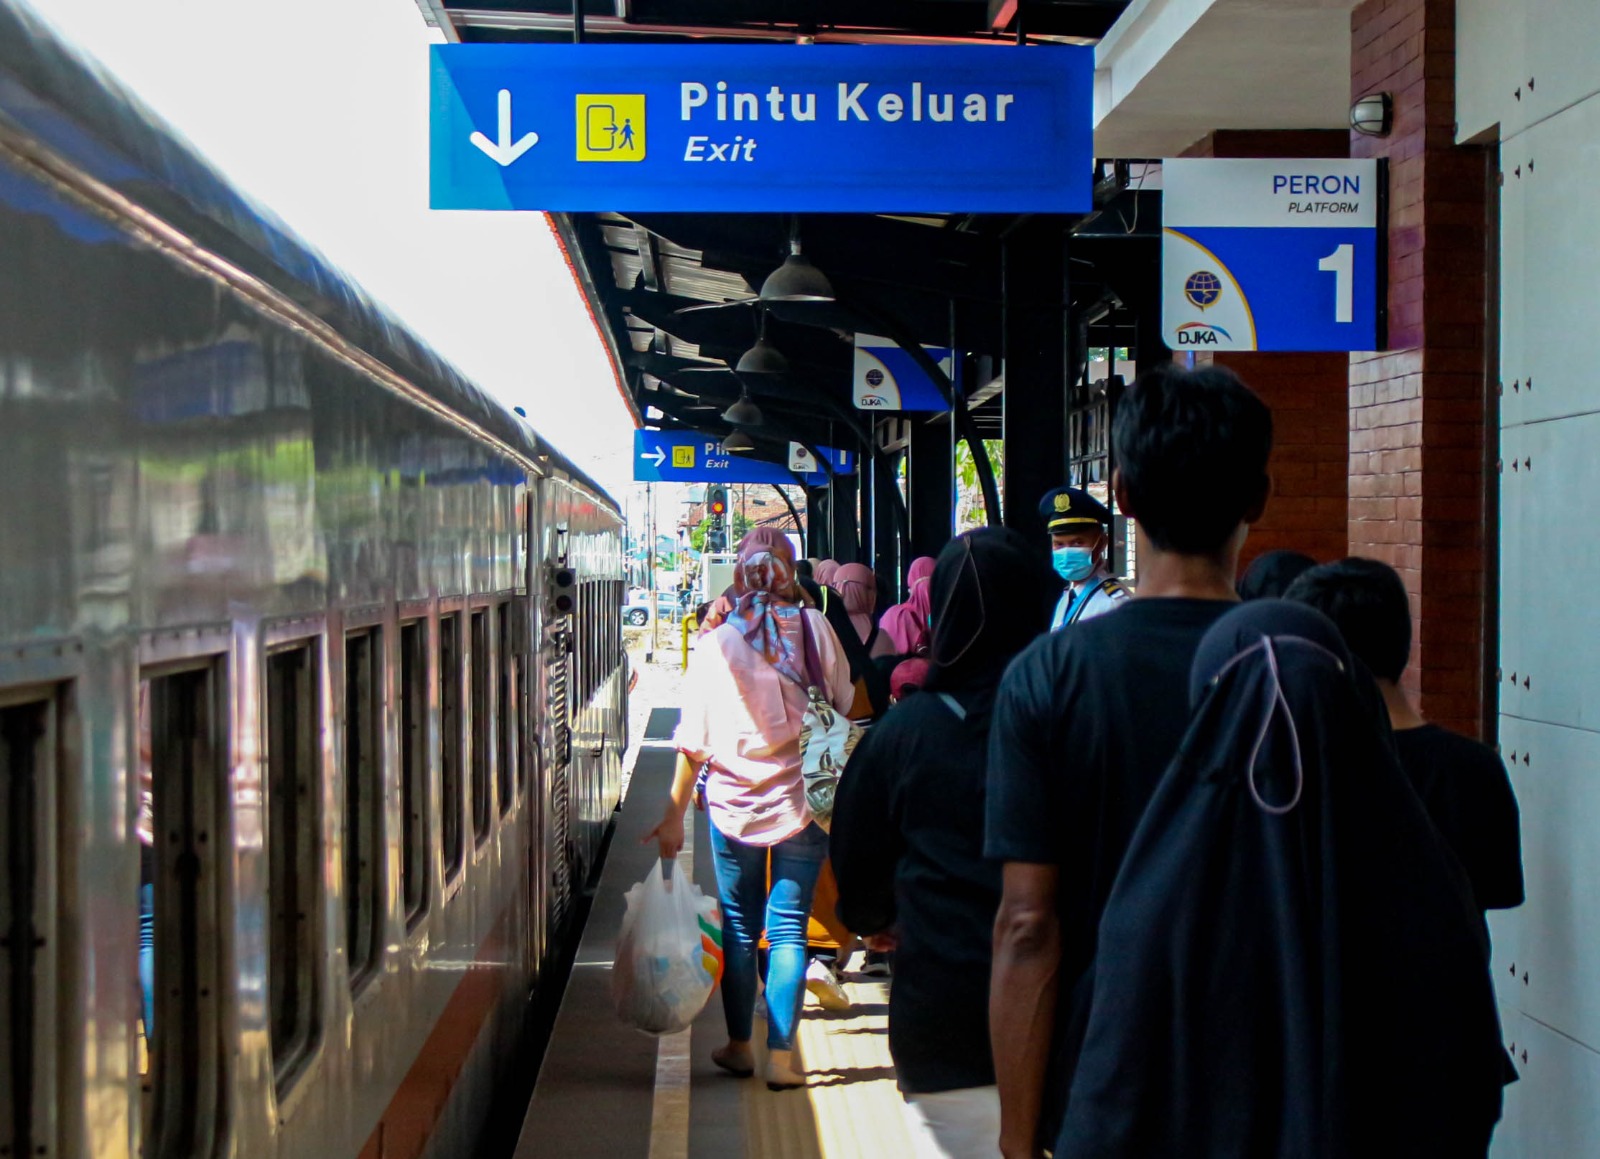 Ist. 52 ribu lebih penumpang kereta api sudah tinggalkan Bandung. Foto. Pandu muslim Jabar Ekspres.